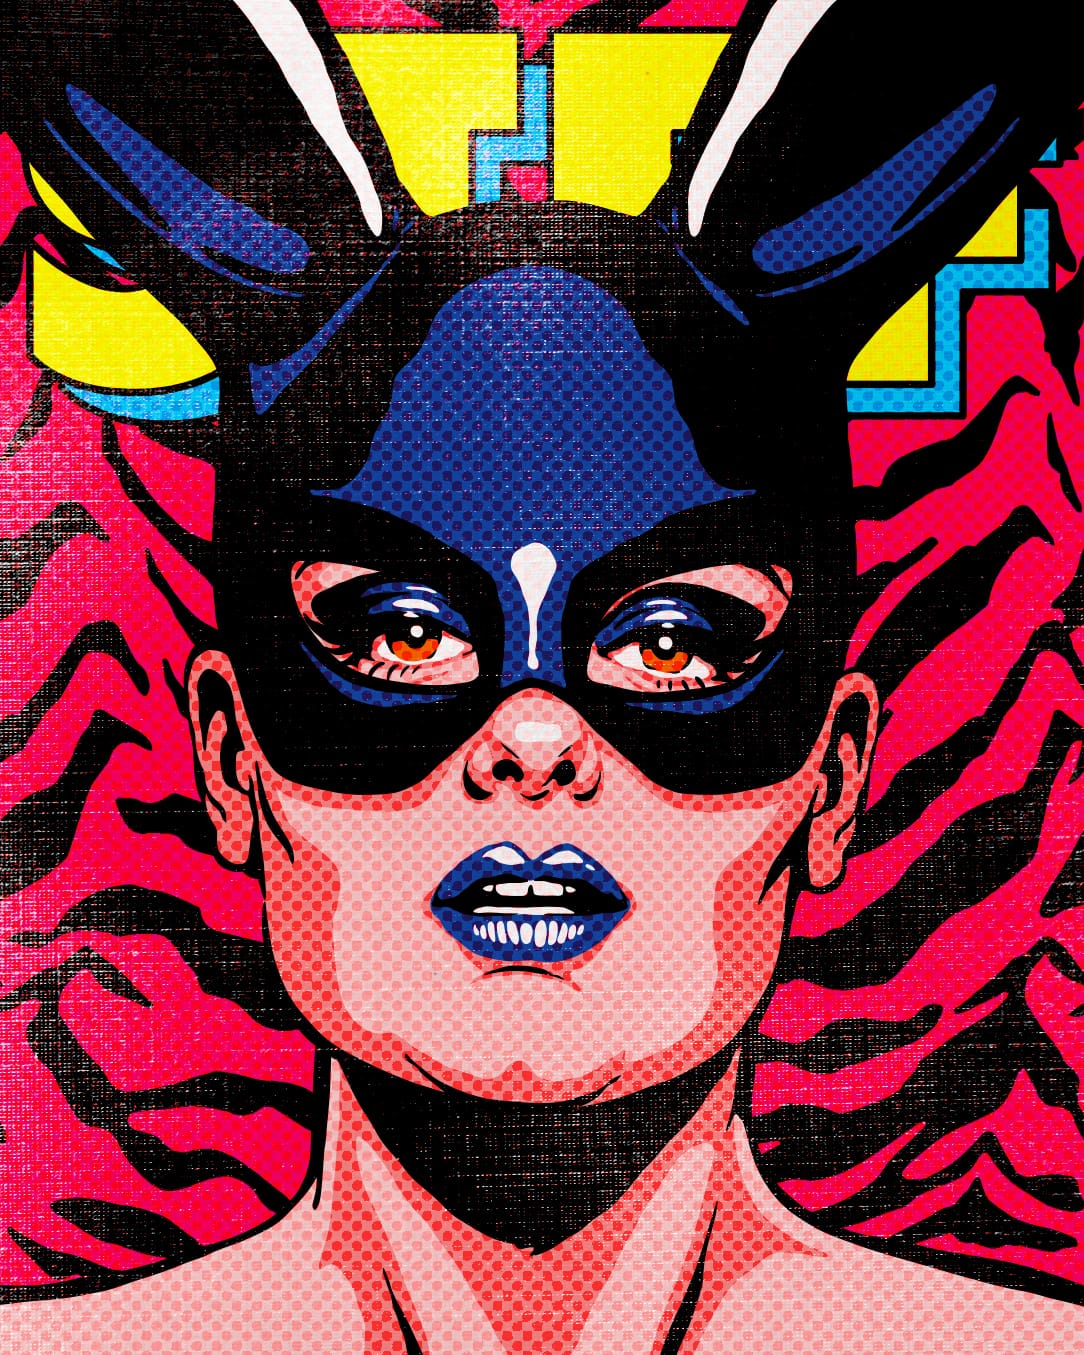 Illustration en couleur : sur un fond zébré rouge et noir, portrait d'une femme qui porte un masque noir sur le haut de son visage et qui finit par deux grandes oreilles de lapin. Derrière les oreilles on devine une écriture jaune et bleu.